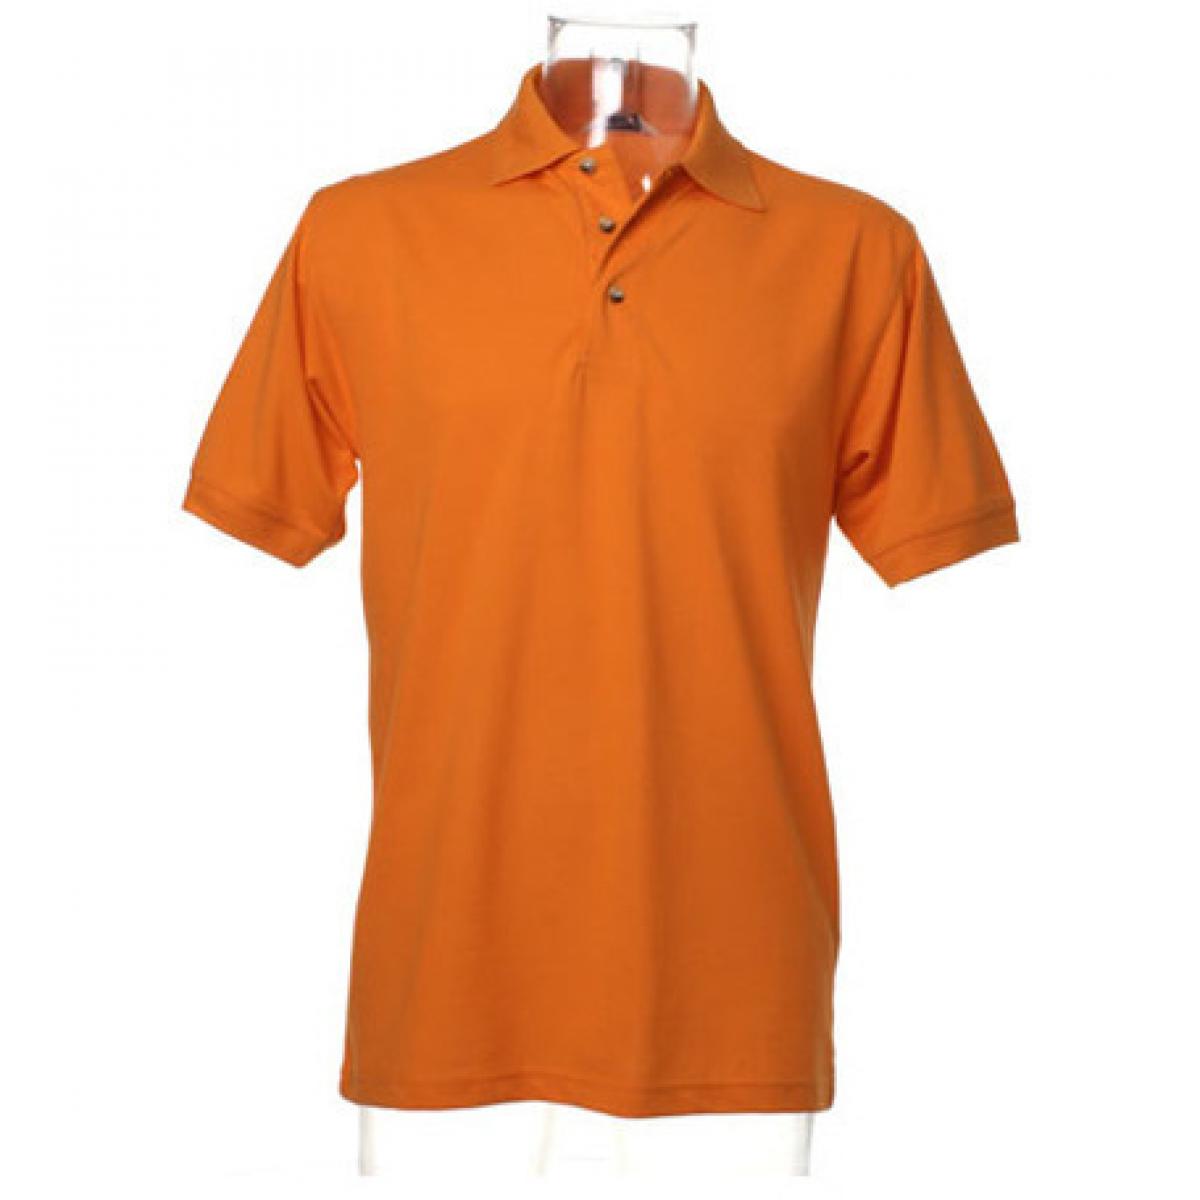 Hersteller: Kustom Kit Herstellernummer: KK400 Artikelbezeichnung: Workwear Polo Superwash /waschbar bis 60 °C / Öko-Tex Farbe: Orange